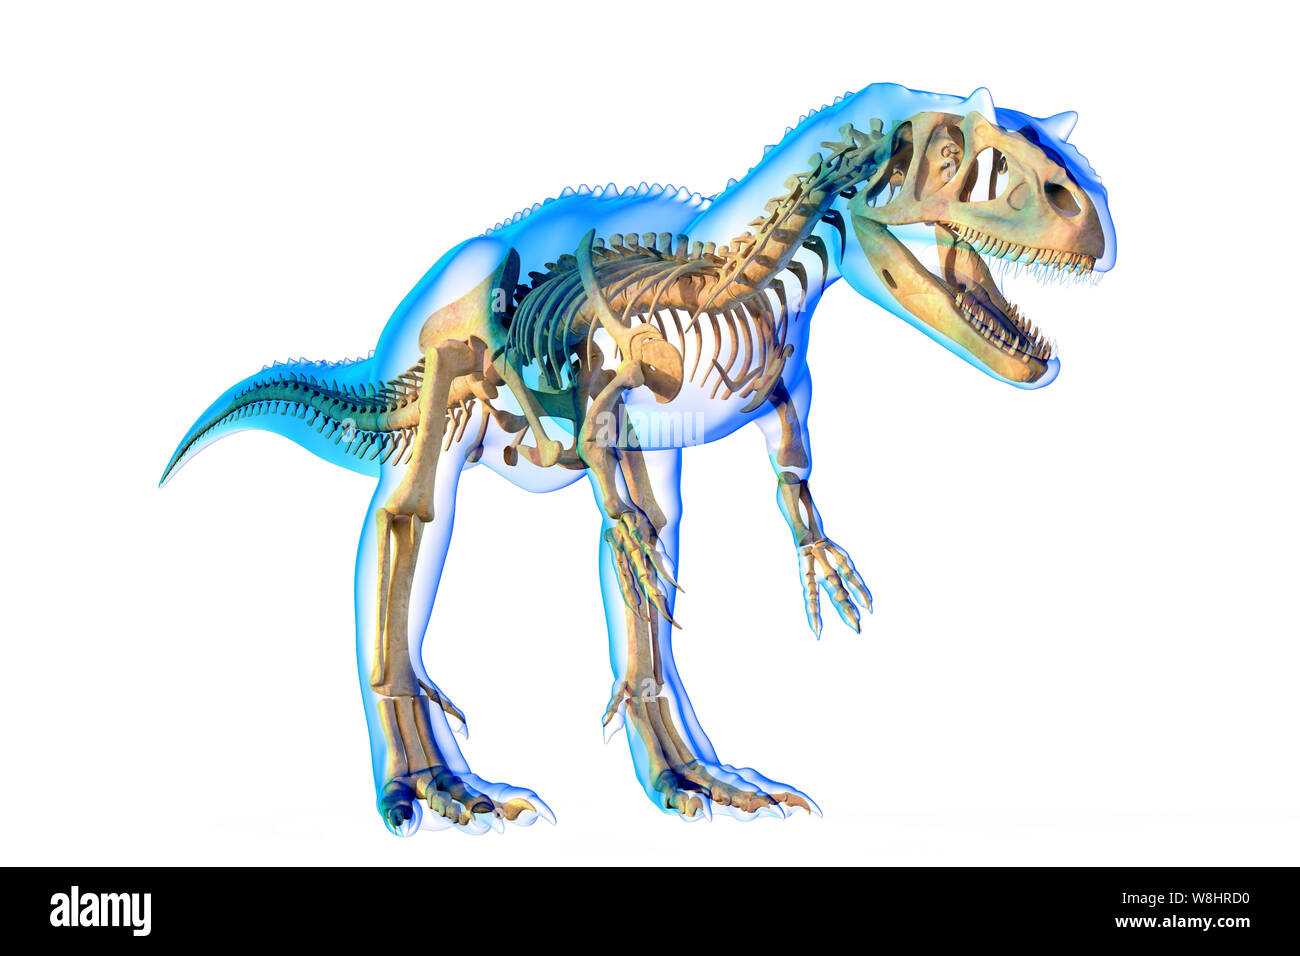 La structure du squelette de dinosaure Allosaurus, illustration. Allosaurs vécu 155-150 millions d'années durant le Jurassique tardif. Banque D'Images